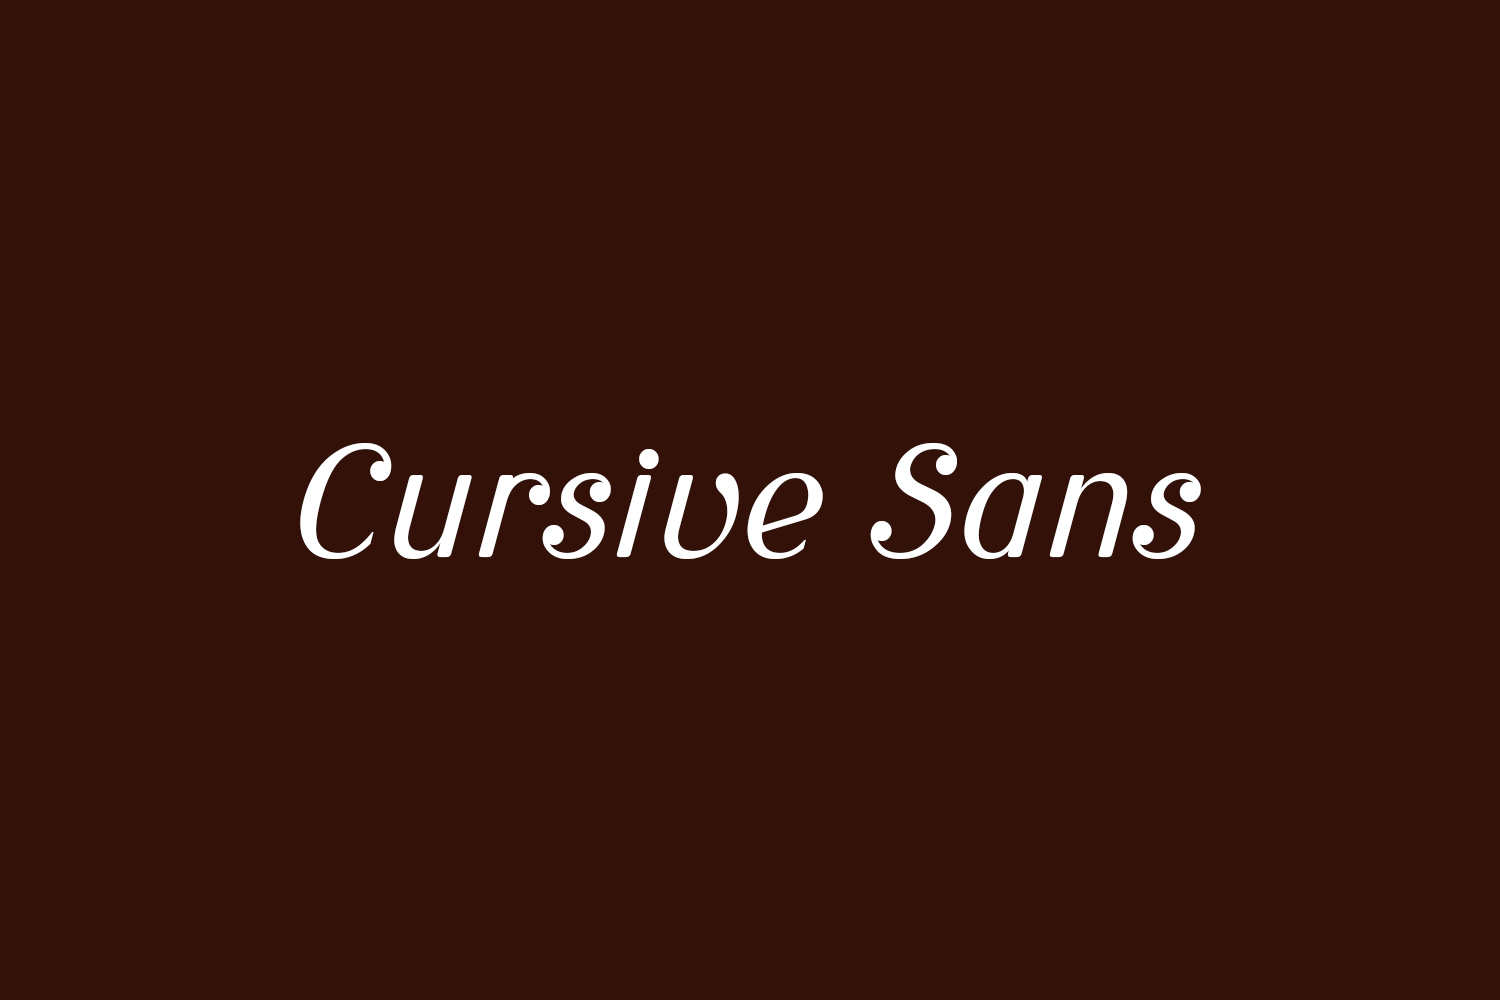 Cursive Sans Free Font